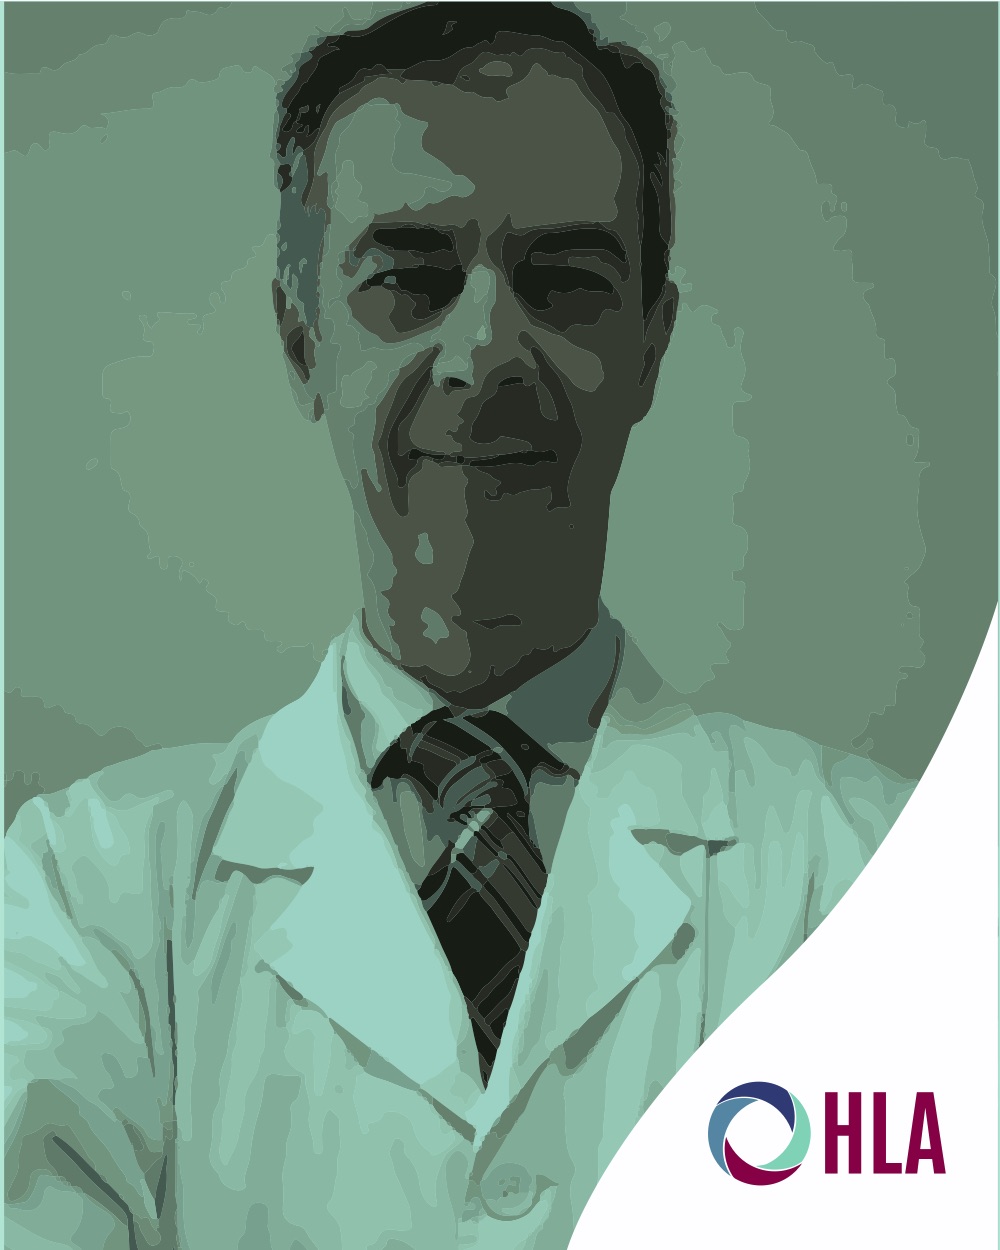 Dr. Emilio Mora Sena